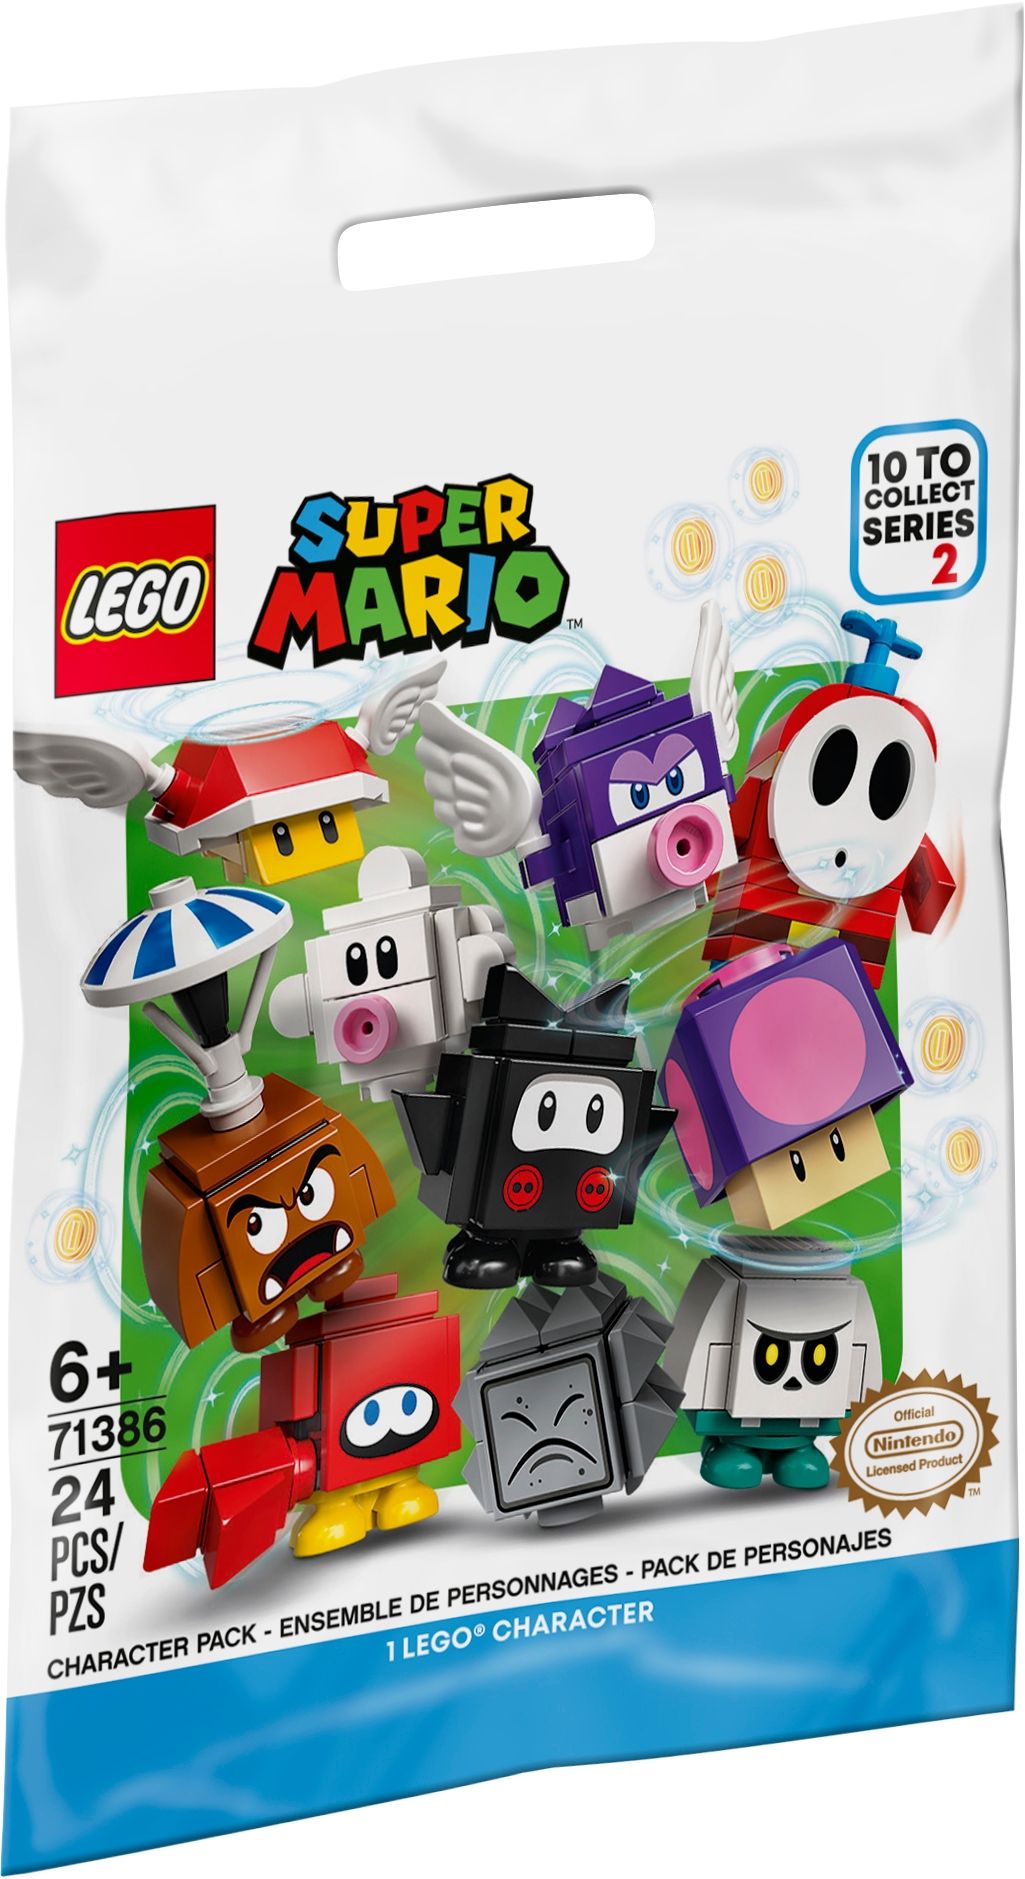 LEGO Super Mario 71386 Mario-Charaktere-Serie 2 - 3x 20er Box LEGO_71386_alt1.jpg